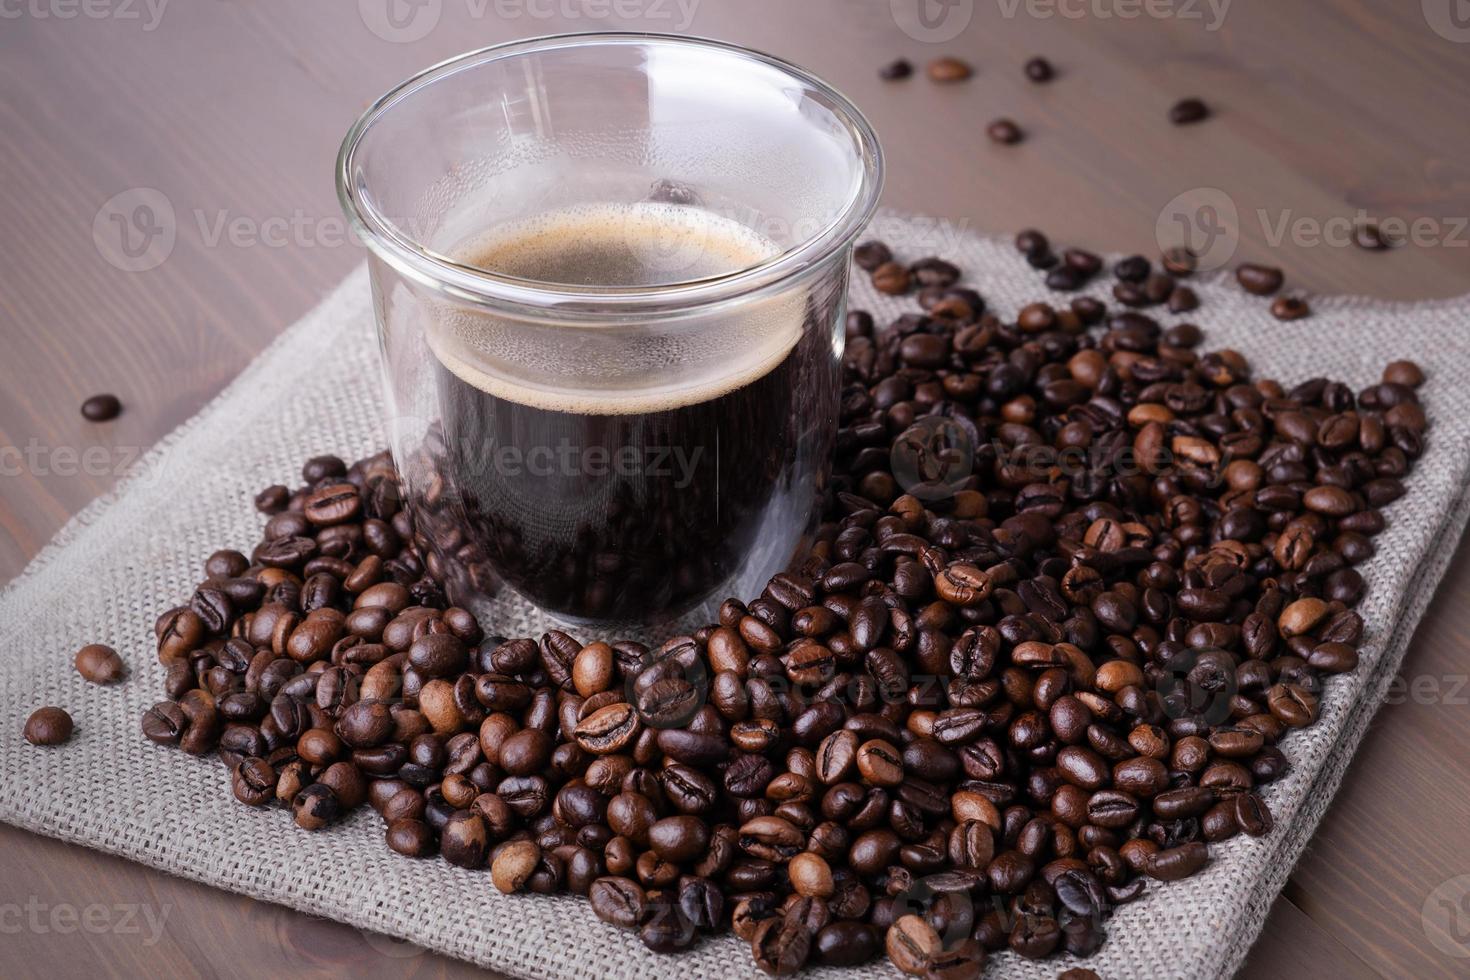 glaskopp med kaffe och hög med rostade kaffebönor foto